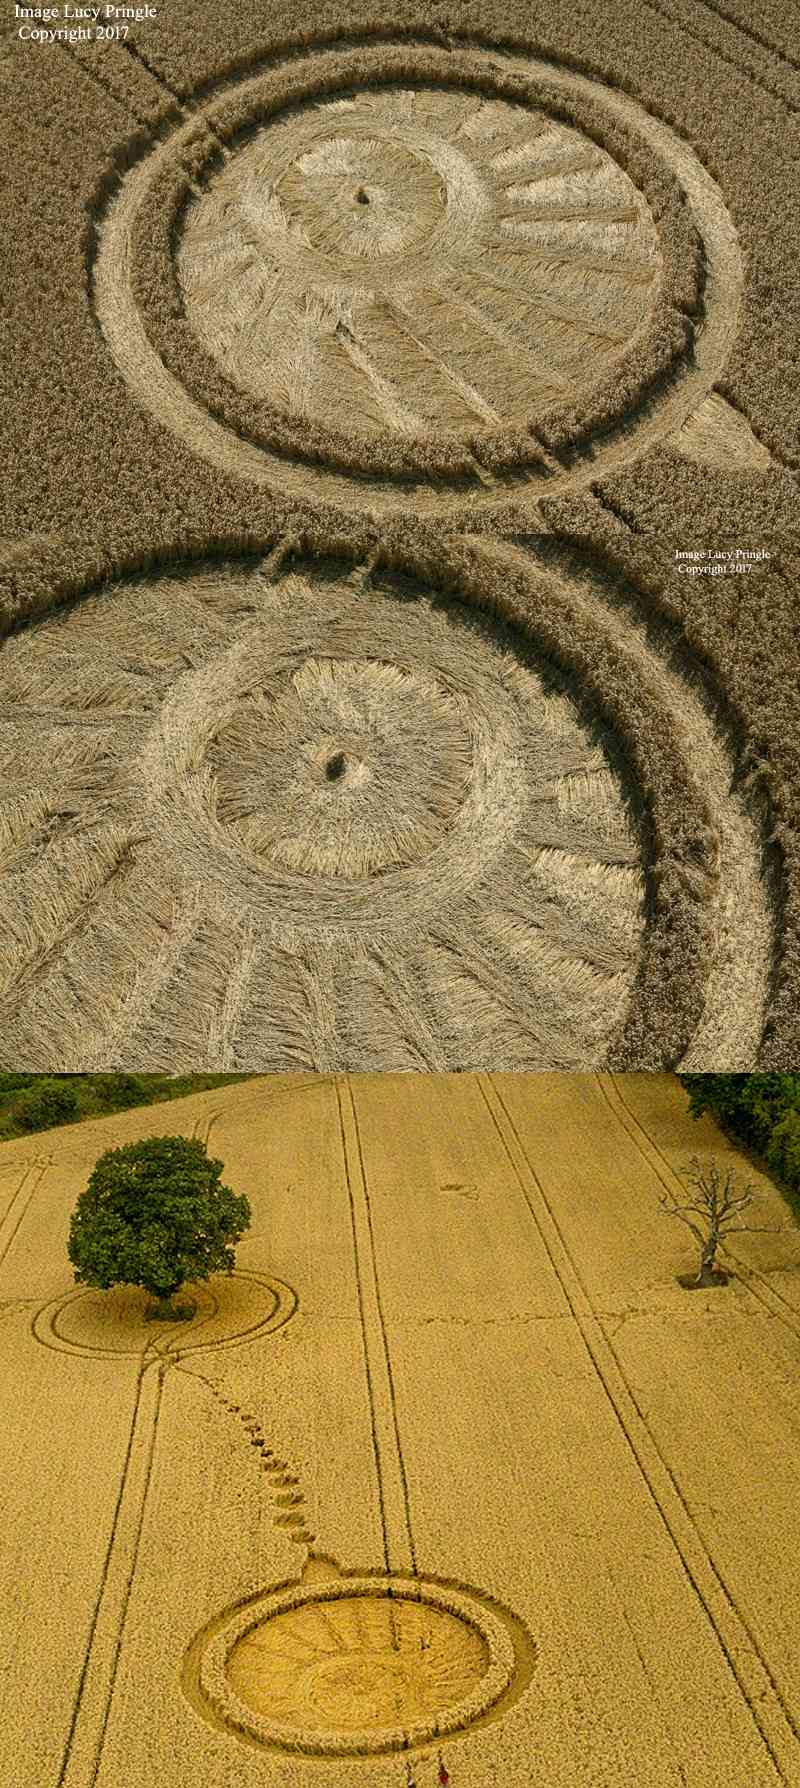 images originales : les crop circles de 2017 - Page 4 Fdbbfd11